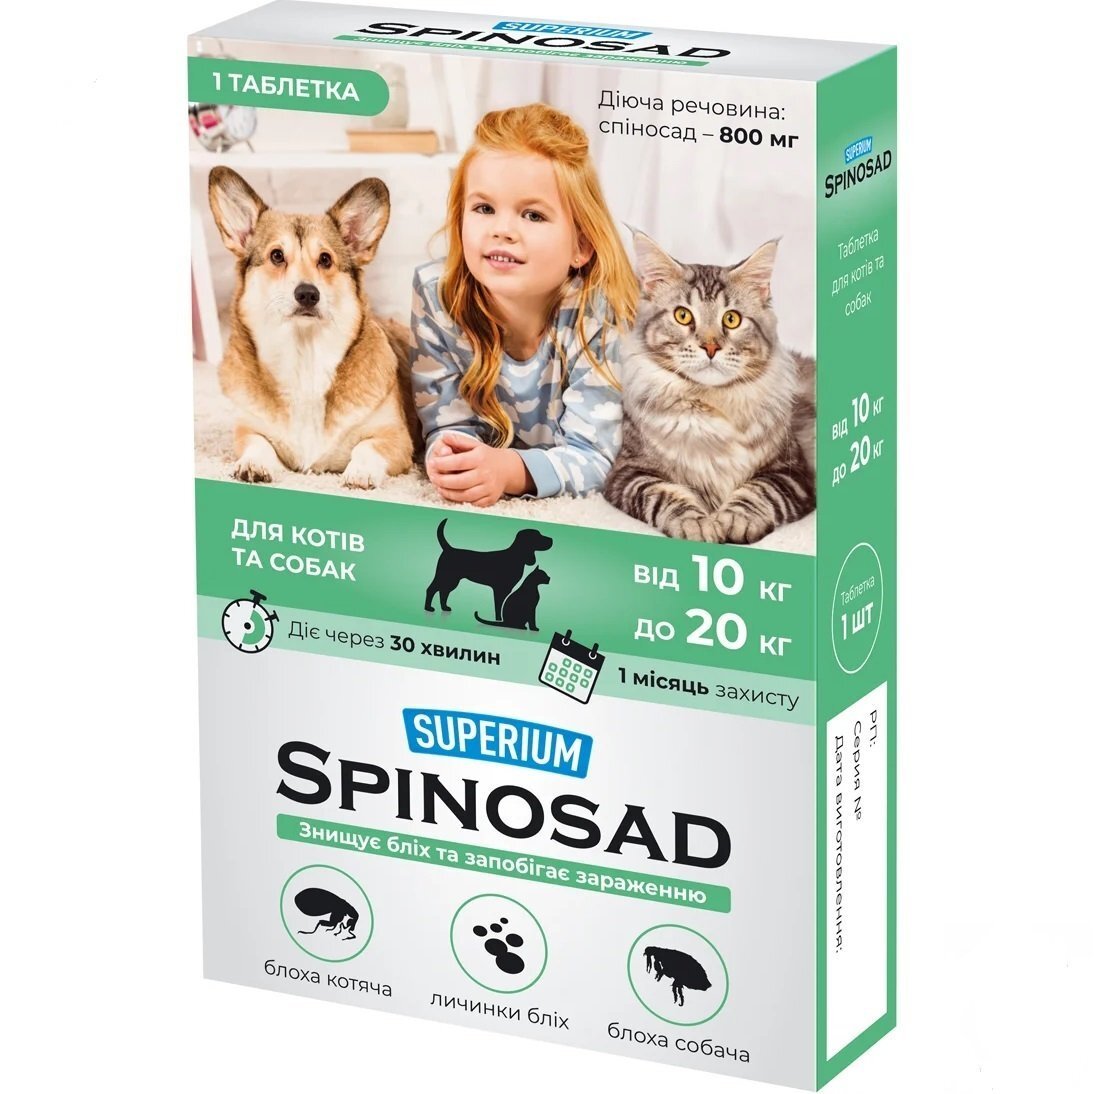 Таблетка от блох SUPERIUM Spinosad для кошек и собак весом 10-20 кг фото 